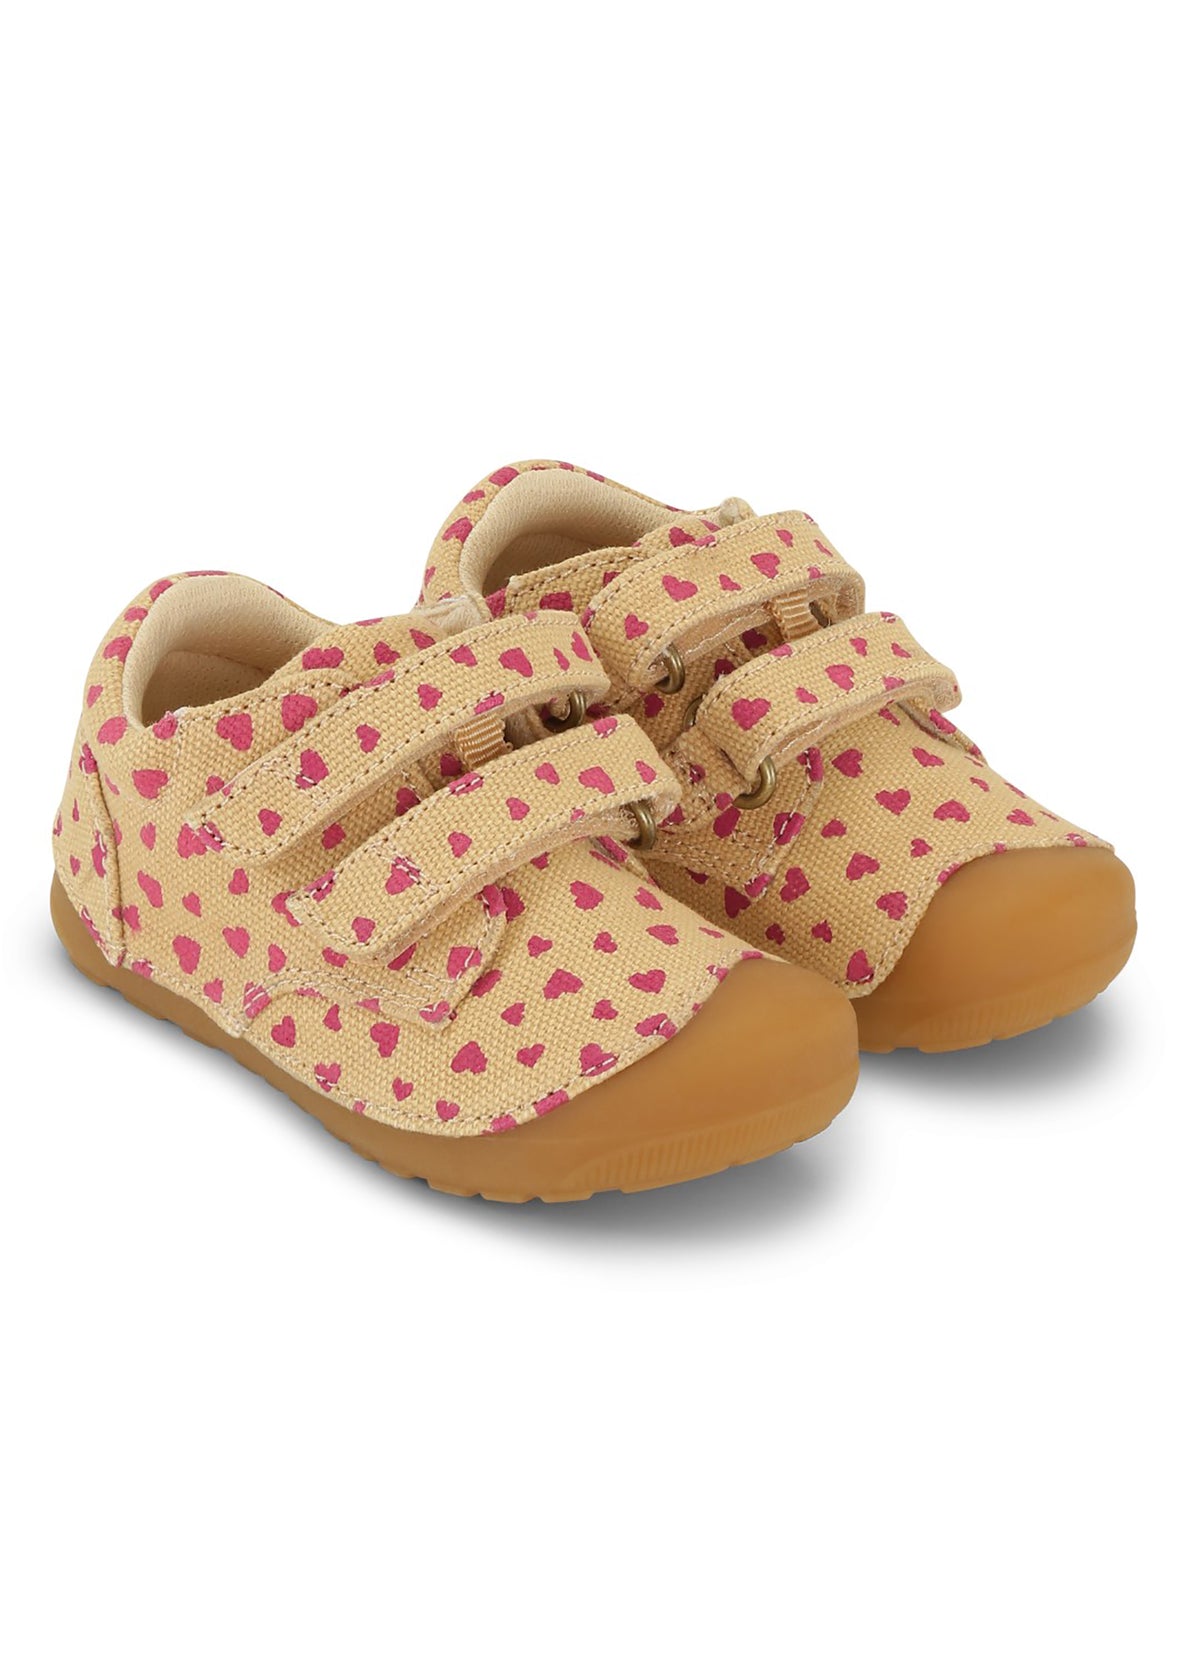 Children's first step shoes - Petit Strap Canvas, Beige Hearts, Bundgaard Zero Heel